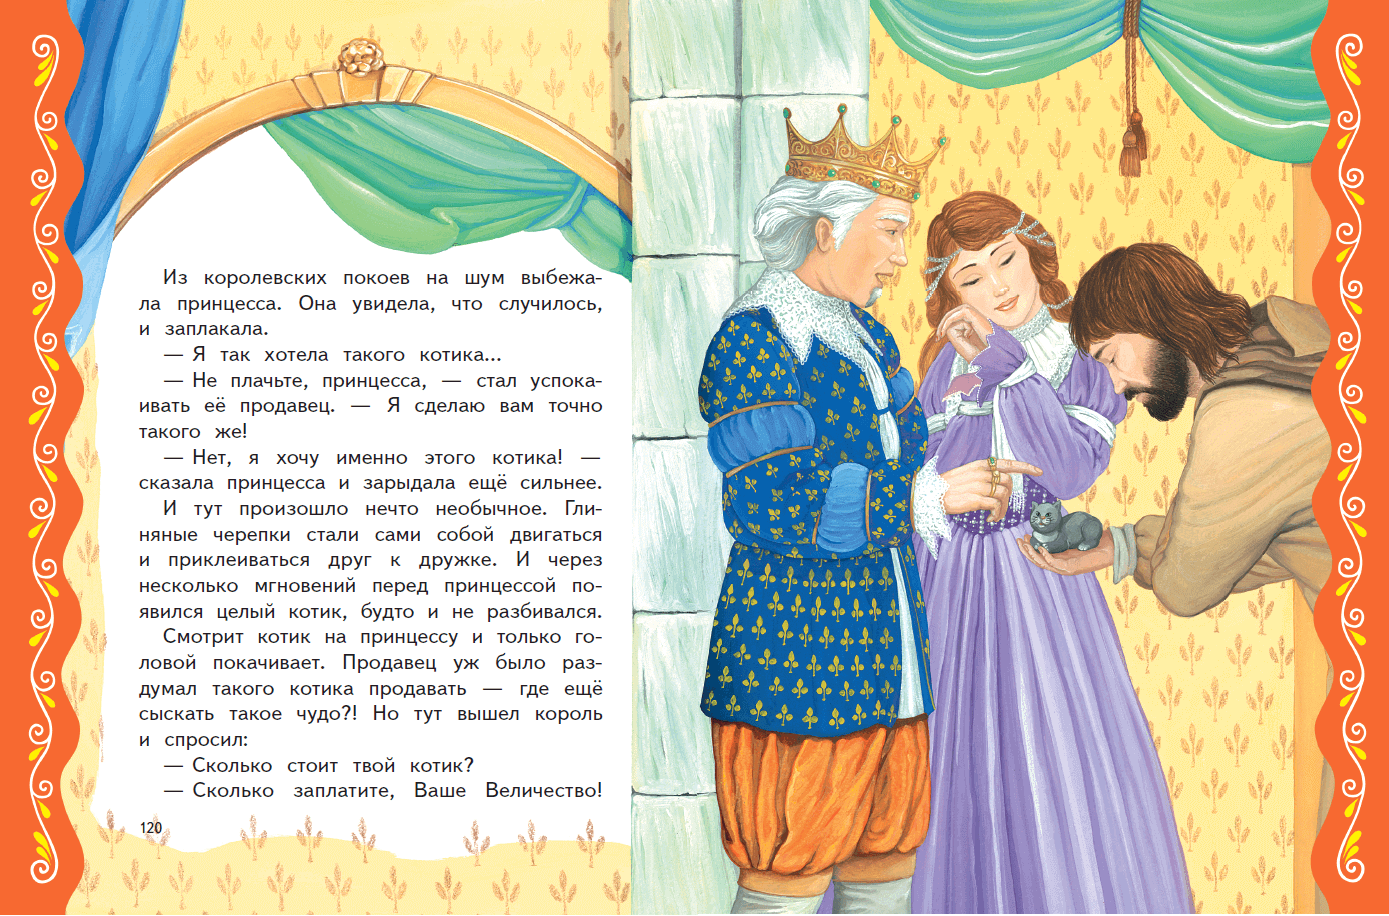 Сказка для 7 лет девочке на ночь. Сказки о принцах и принцессах. Короткая сказка про принцессу. Принц сказка. Сказка на ночь для детей про принцессу.